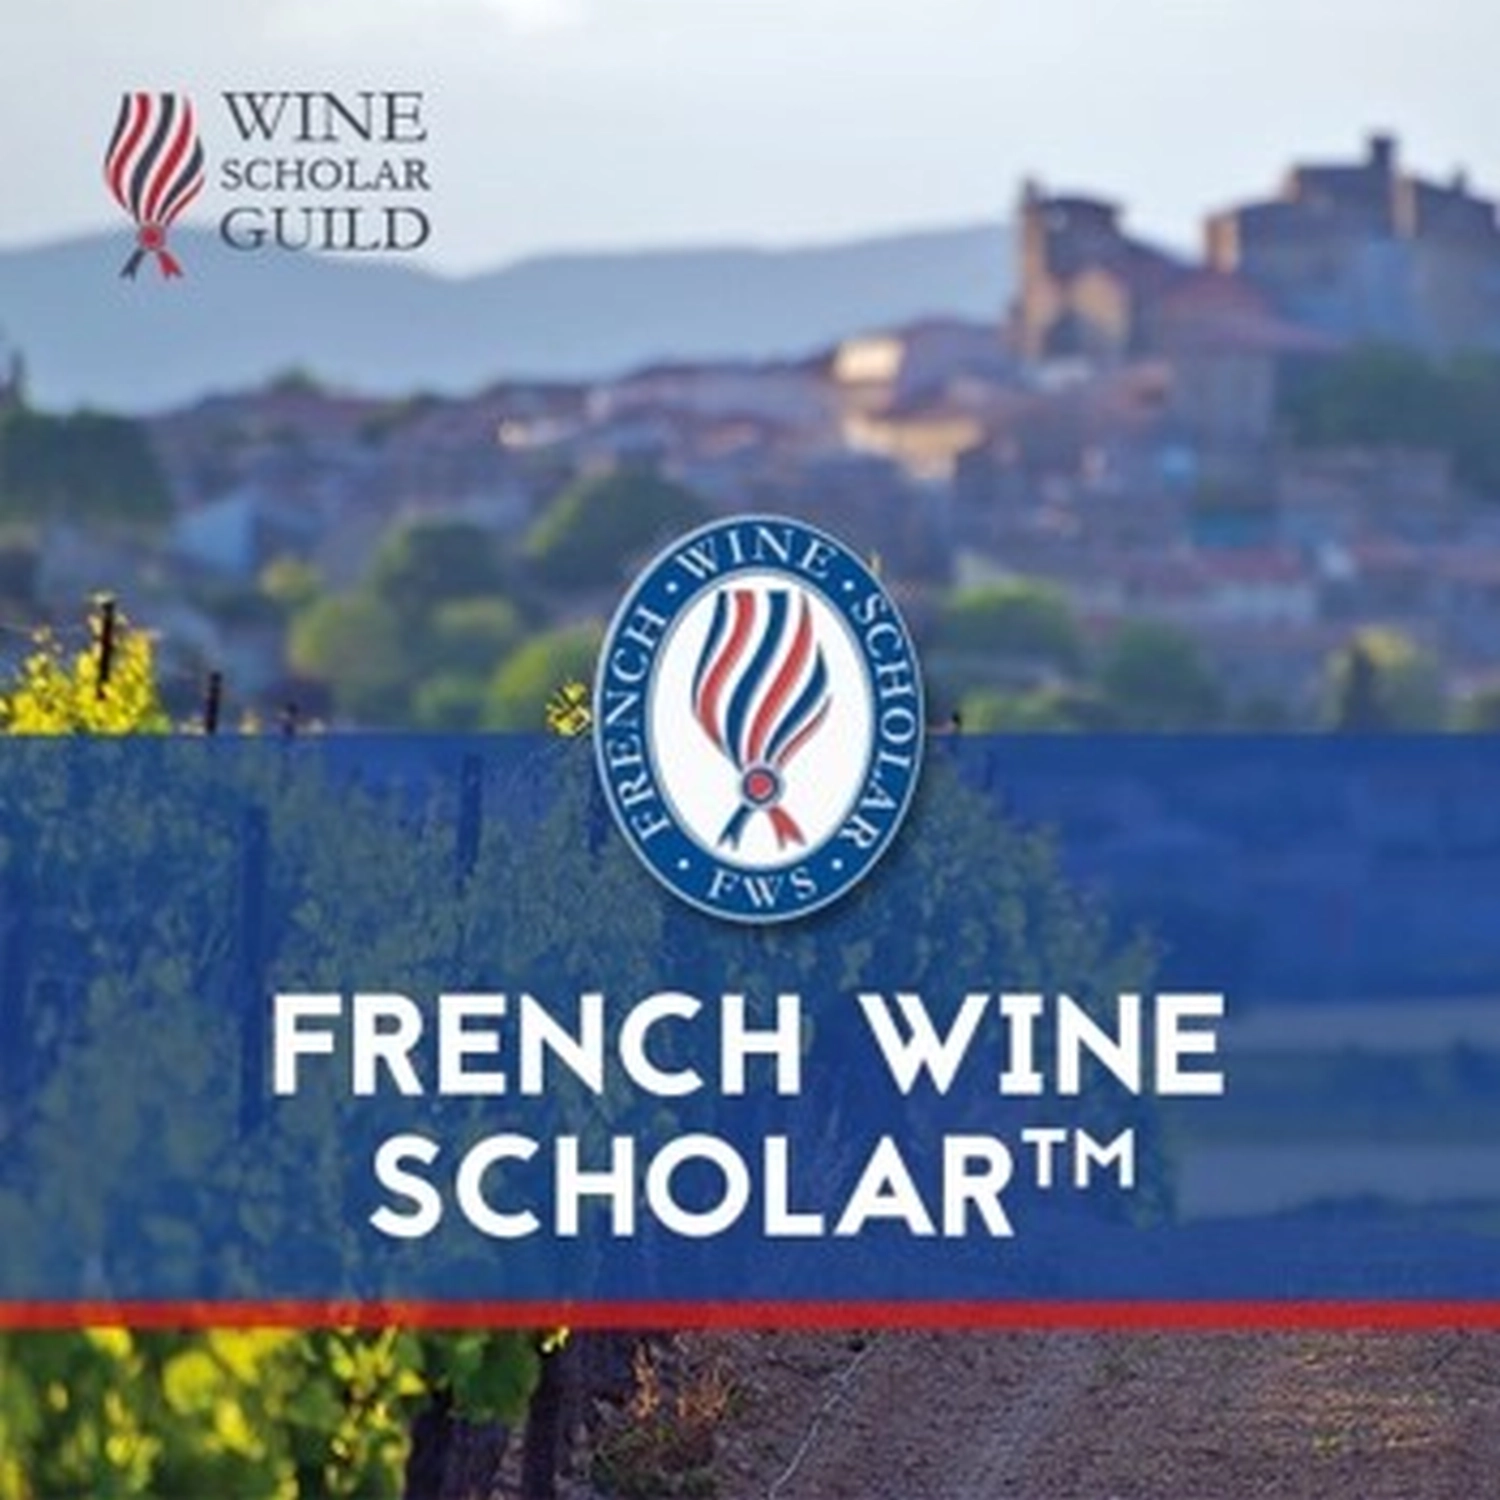 Wine Scholar Program von der Weinschule Krömker KG